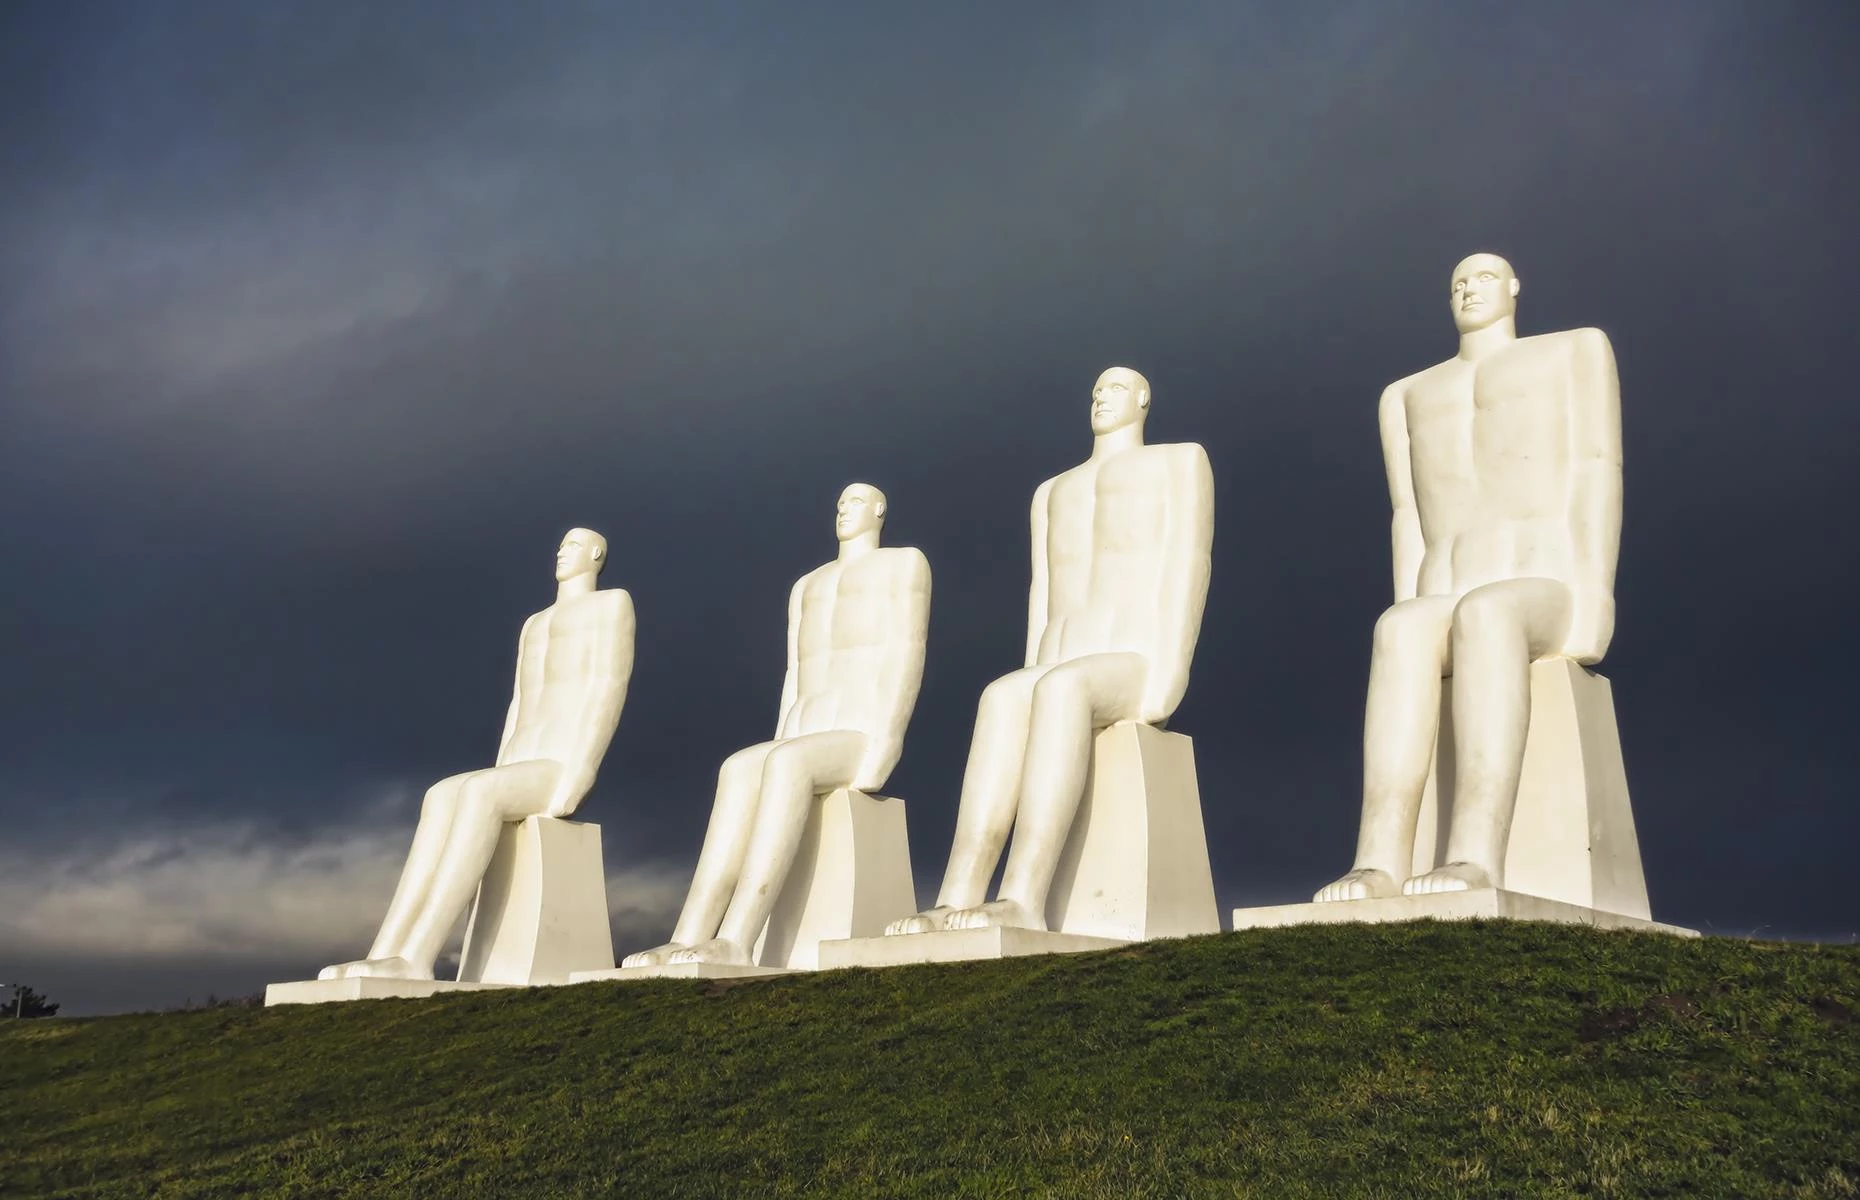 Man Meets the Sea, Esbjerg, Đan Mạch: Du khách đến thành phố Esbjerg bằng đường biển sẽ được chào đón bởi 4 bức tượng hoành tráng cao 8,2 m được chế tác bằng bê tông trắng mang tên Man Meets the Sea. Tác phẩm được công bố vào năm 1995, kỷ niệm 100 năm Esbjerg là đô thị độc lập. Ảnh: Frank Bach.